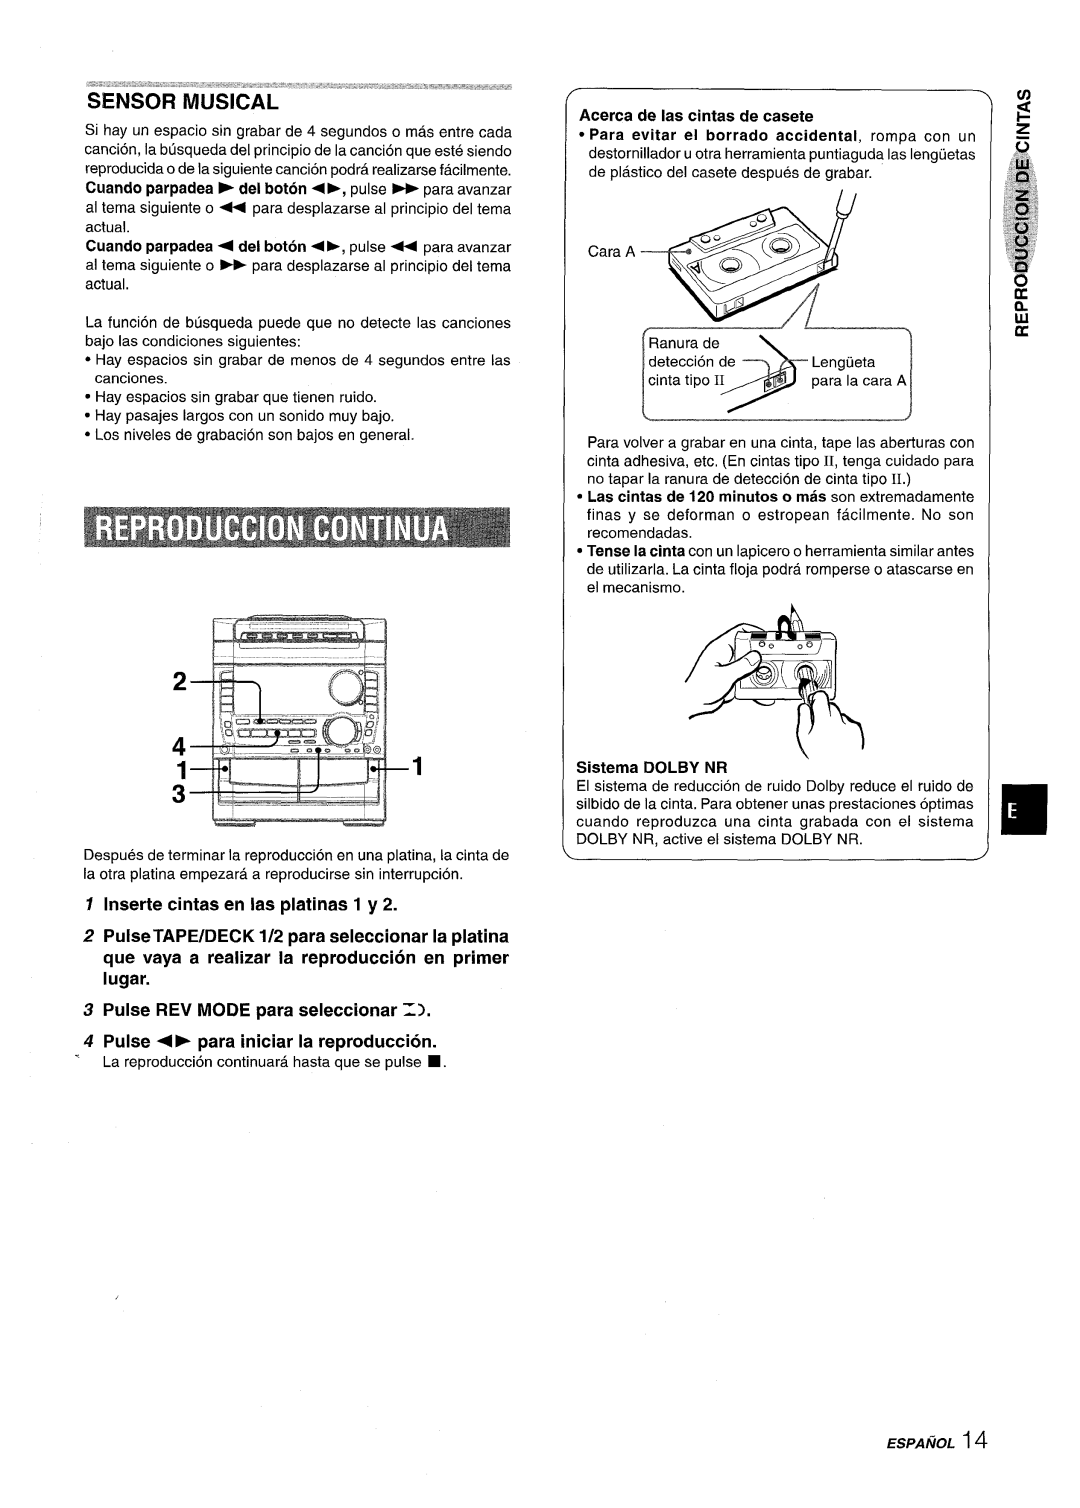 Sony NSX-A959 manual Inserte cintas en las platinas 1 y, PulseTAPE/DECK 1/2 para seleccionar la platina, Sistema DOLBY NR 